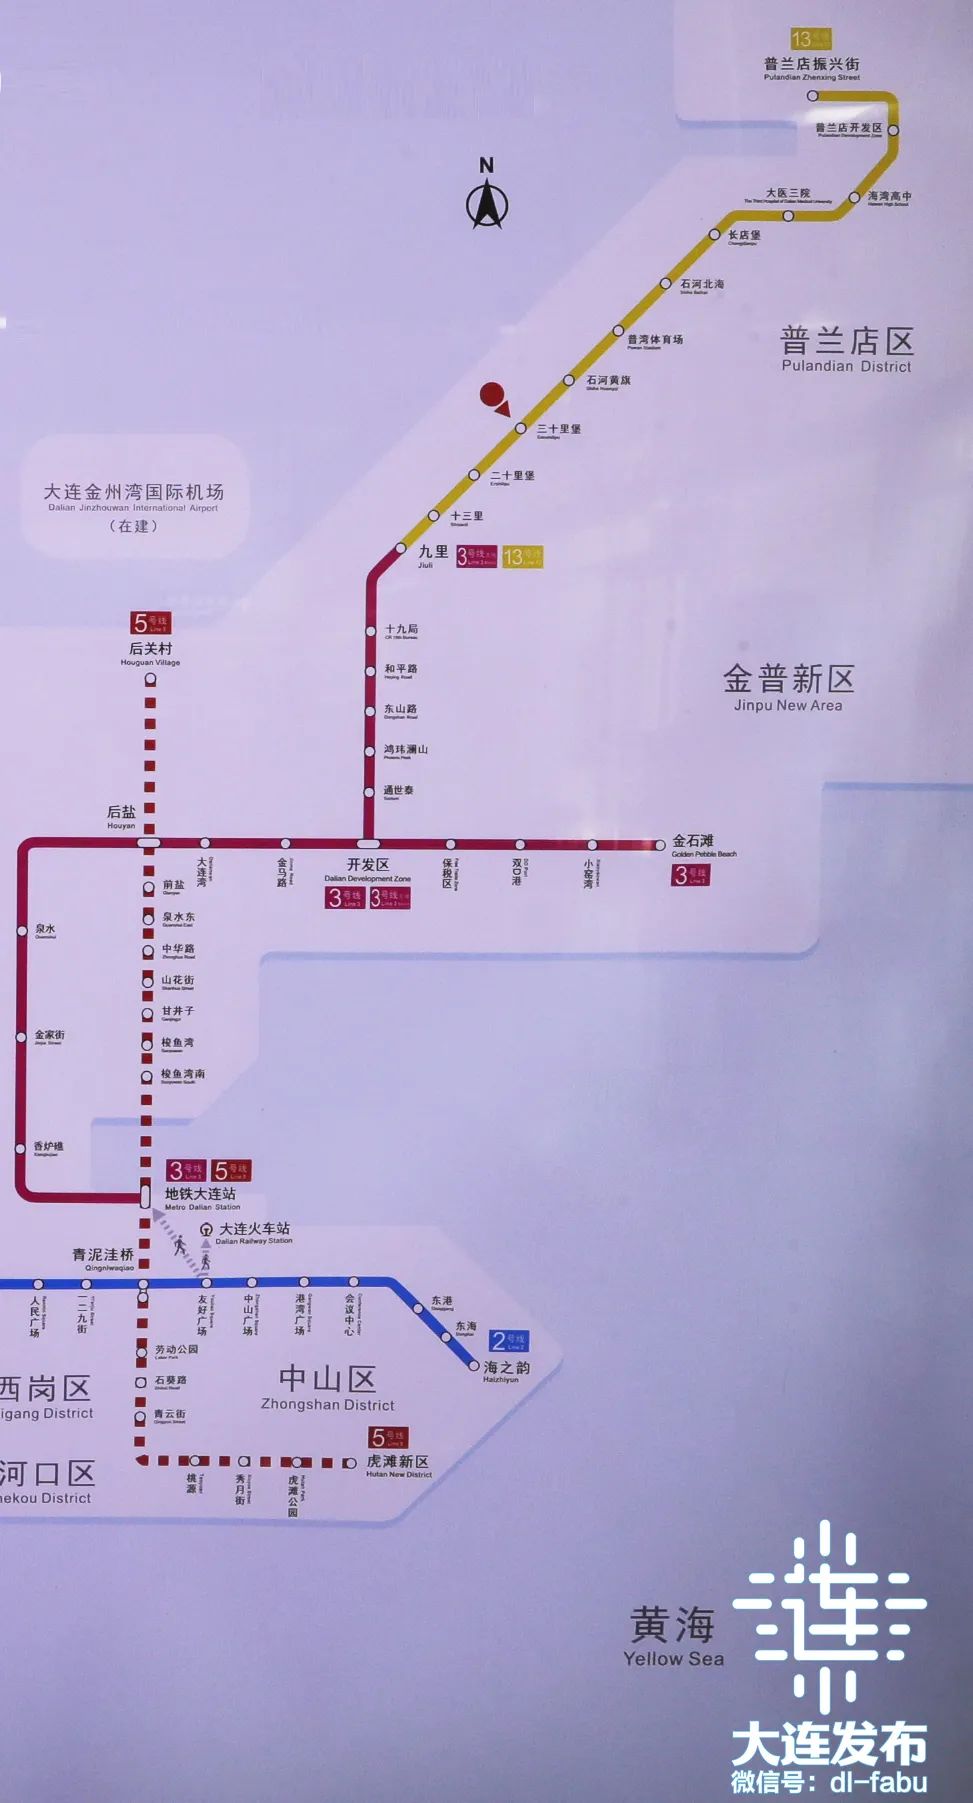 乘客可乘坐地铁13号线直达地铁3号线支线开发区站,再换乘地铁3号线